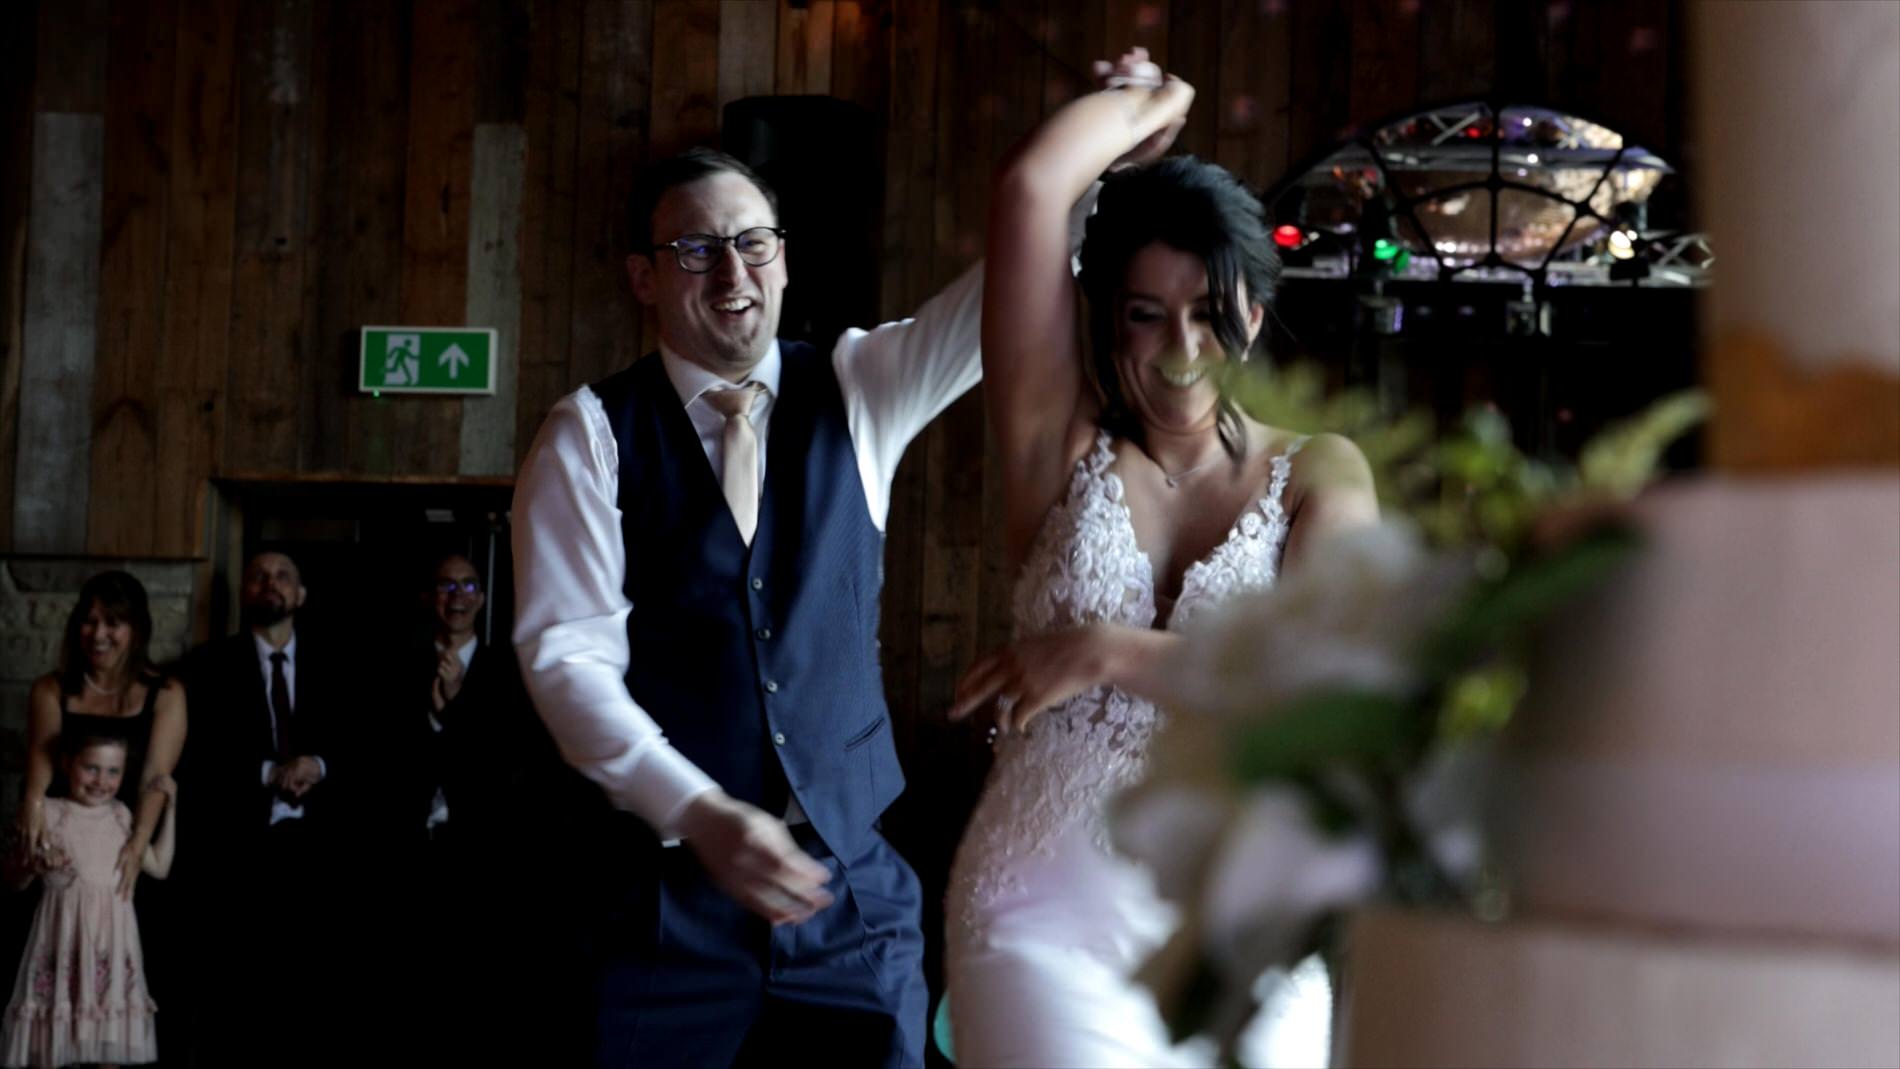 the couple enjoy an upbeat first dance